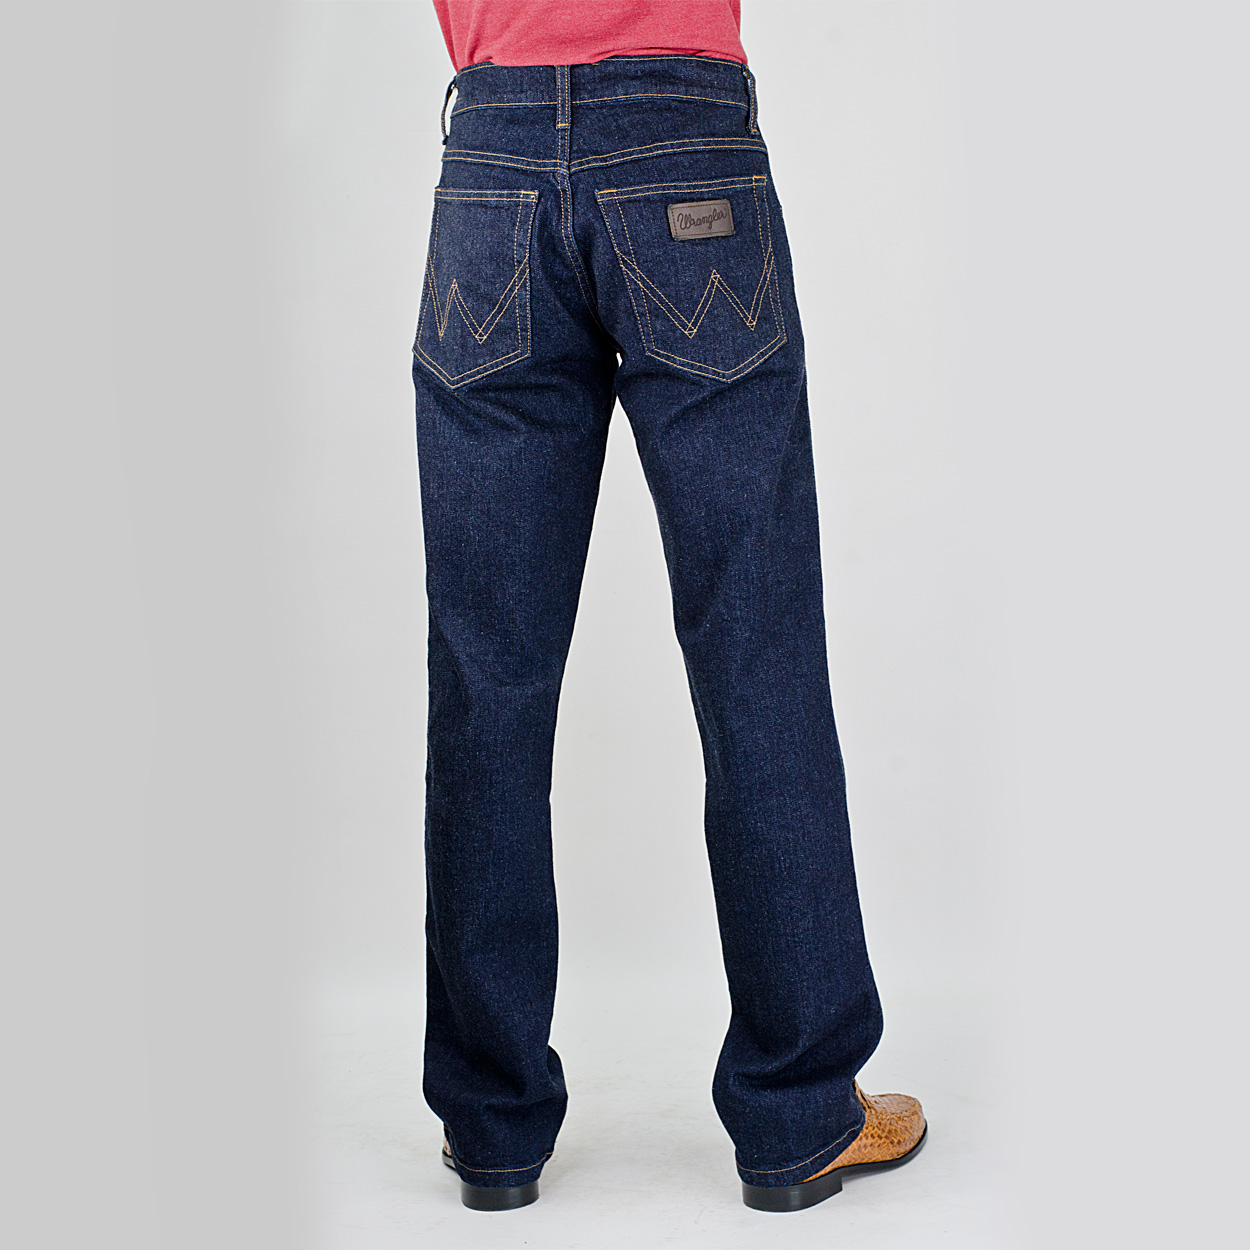 Total 117+ imagen wrangler jeans for boys - Abzlocal.mx